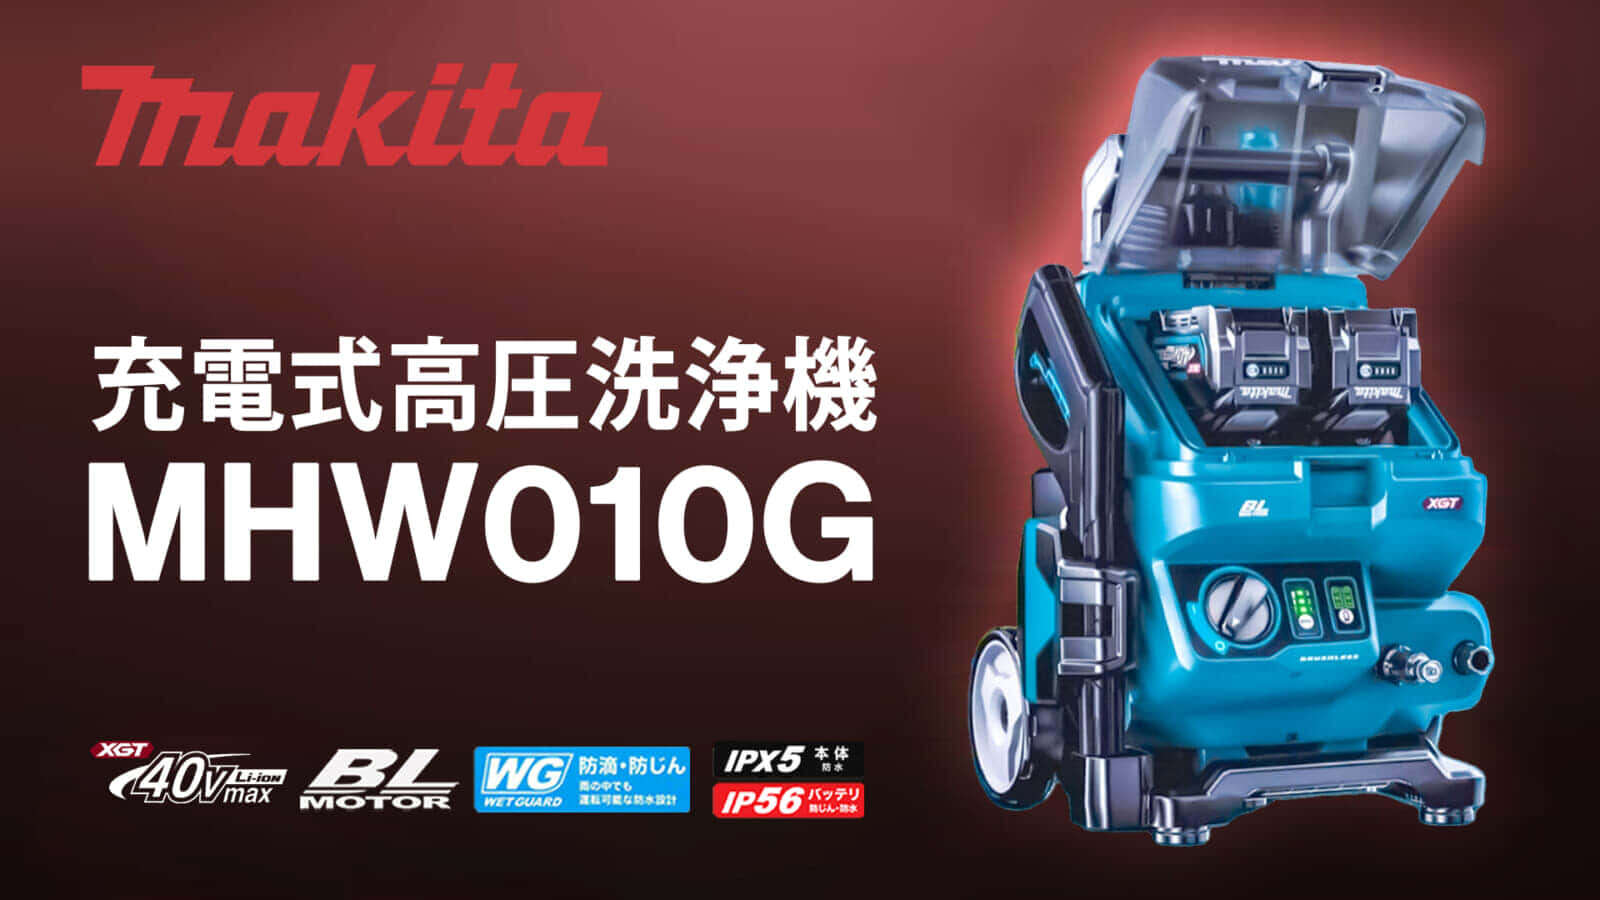 マキタ MHW001GZ 充電式高圧洗浄機を発売、ACモデルを超える洗浄力を実現